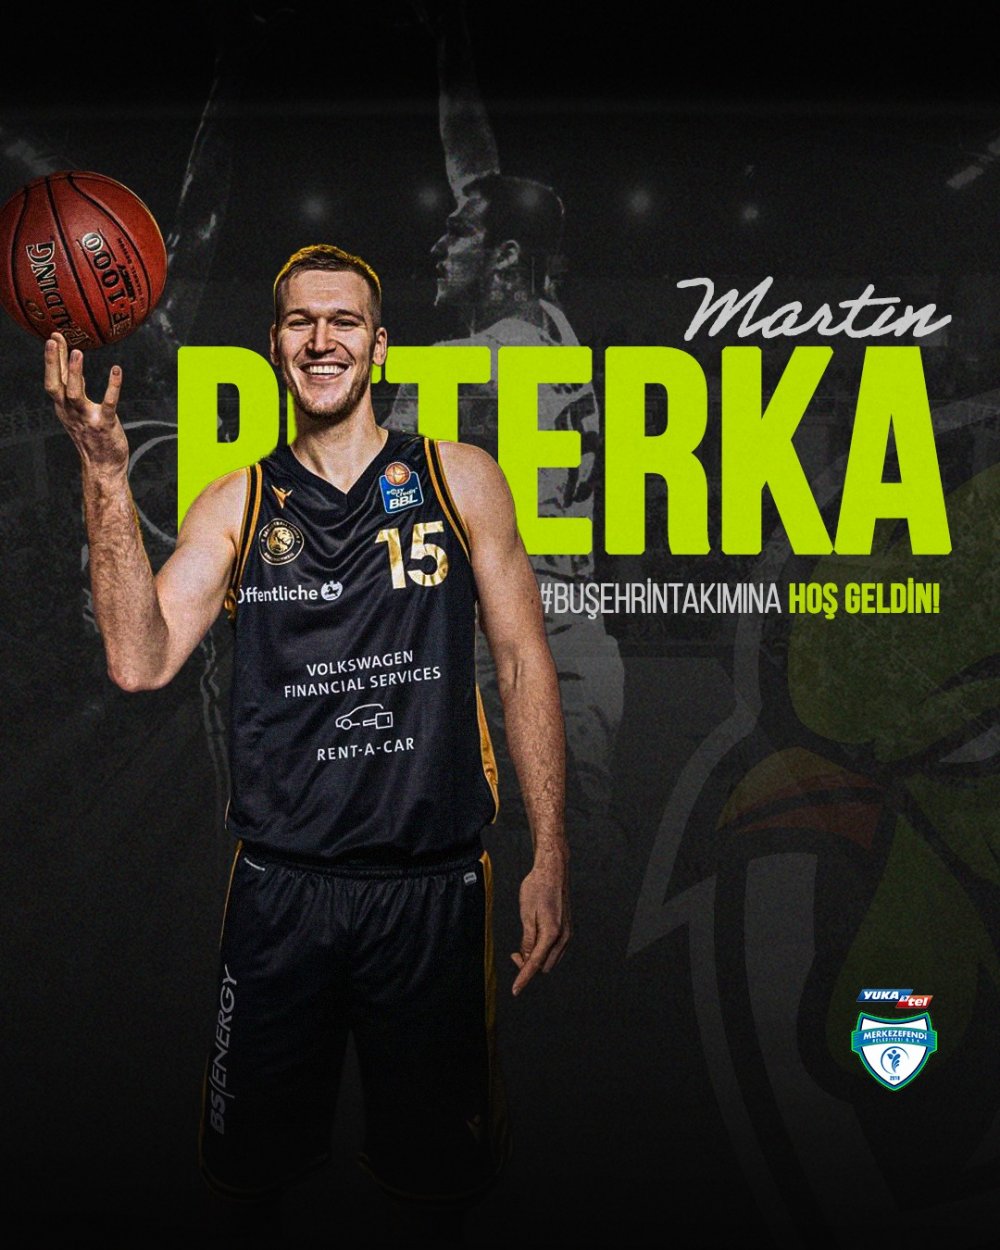 Yukatel Merkezefendi Belediyesi Denizli Basket, Çek forvet Martin Peterka ile anlaştı.